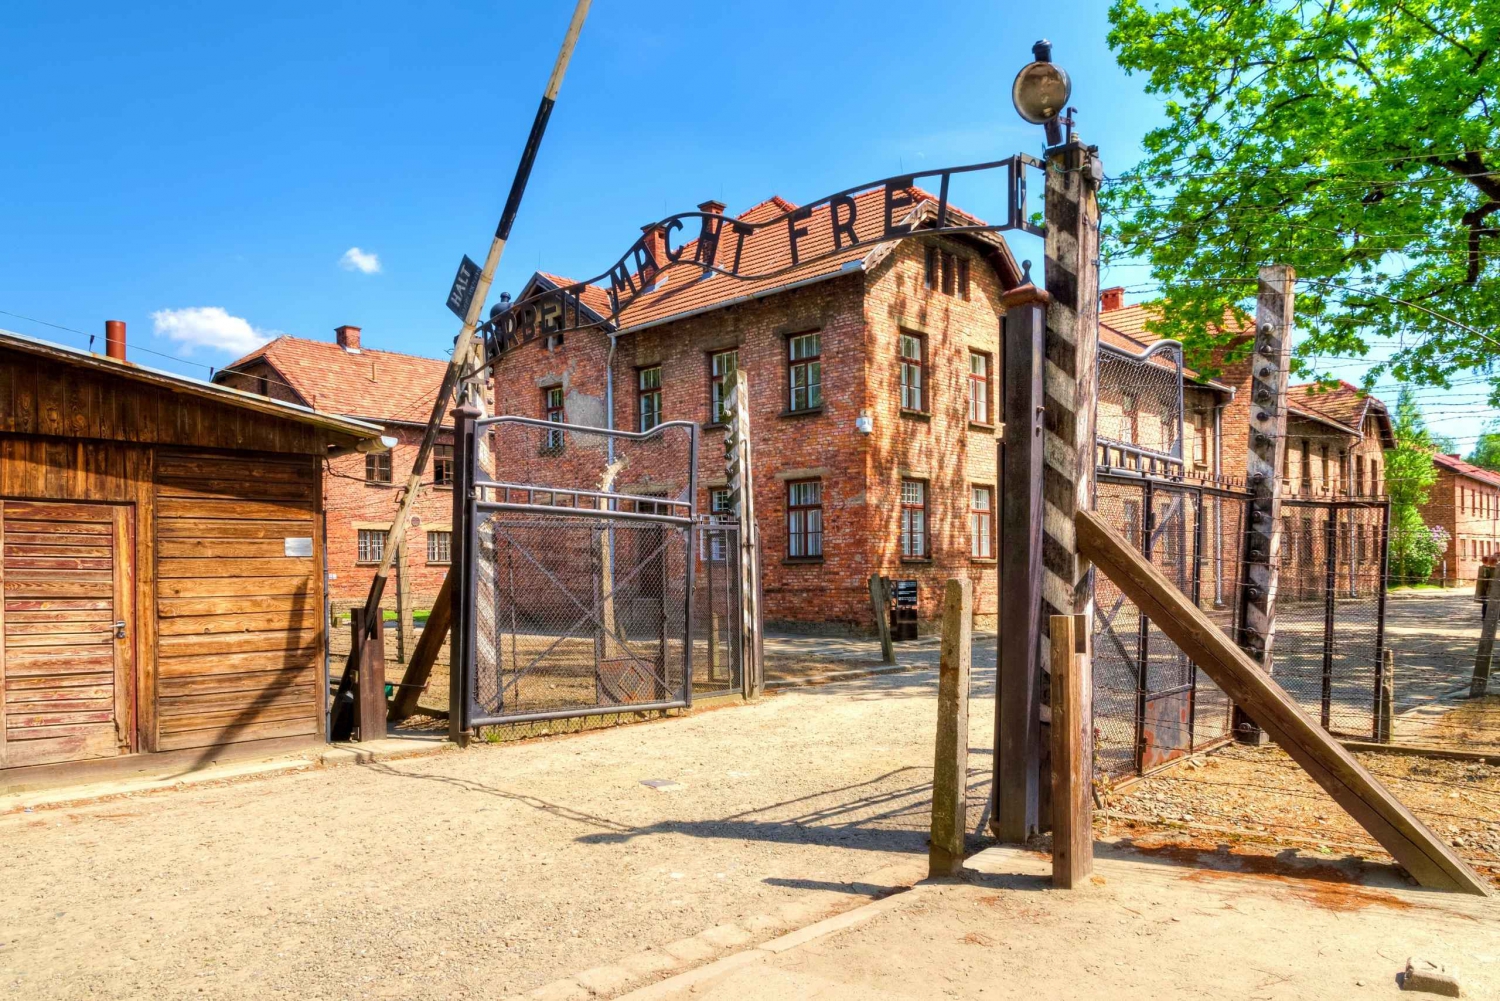 Krakow/Balice: Transfer to Auschwitz, Wieliczka or Zakopane